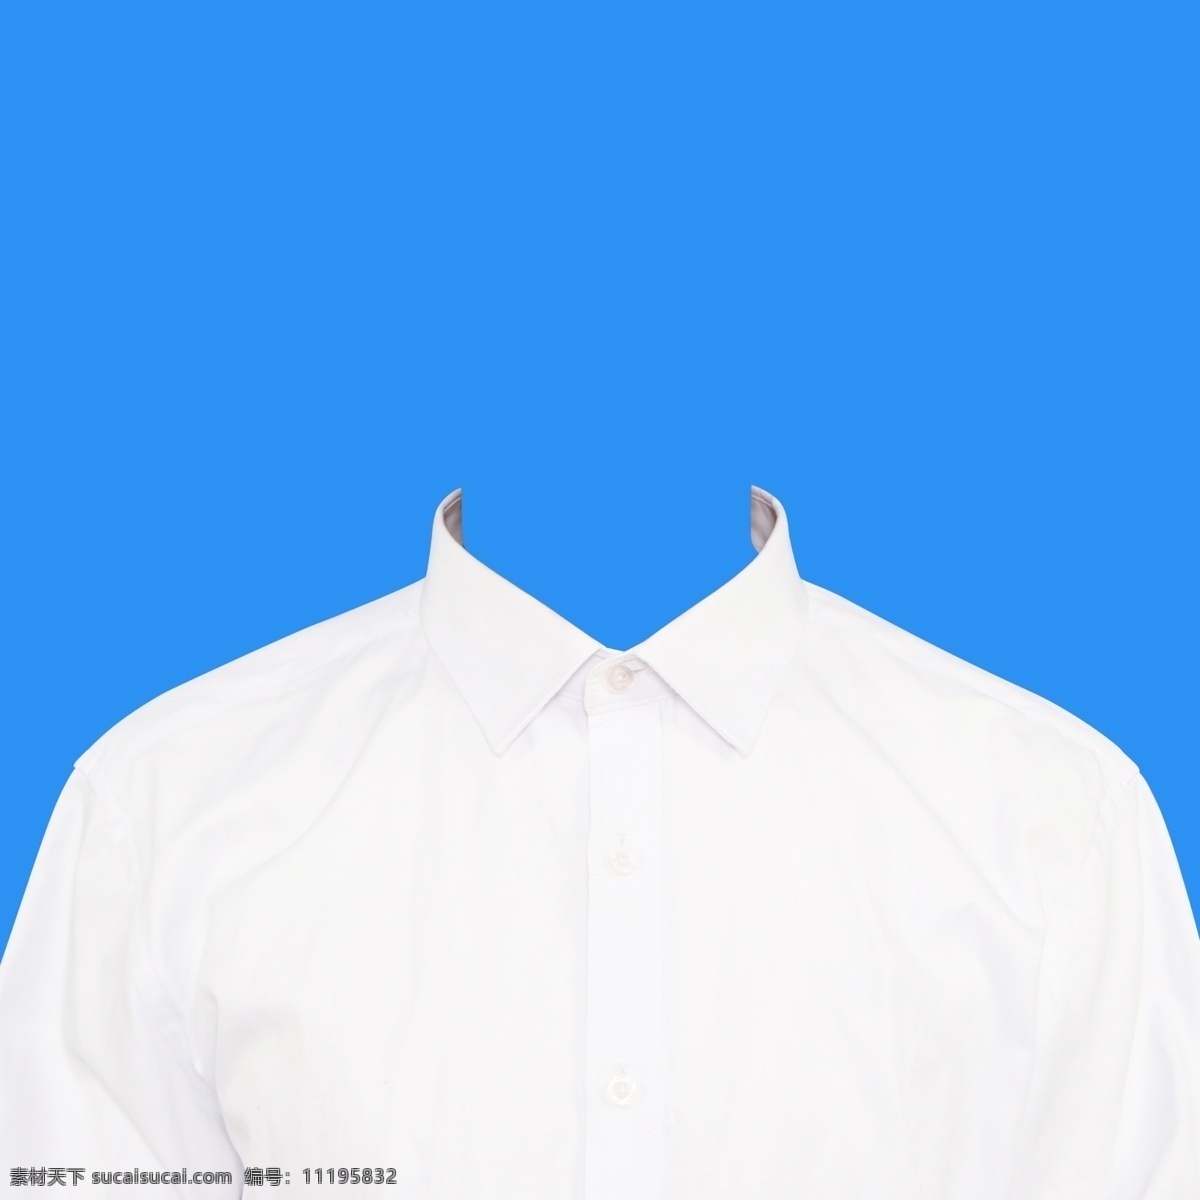 男士 衬衫 证件 衣服 素材图片 男士衬衫 证件照衣服 衬衫素材 白色衬衫素材 证件照衬衫